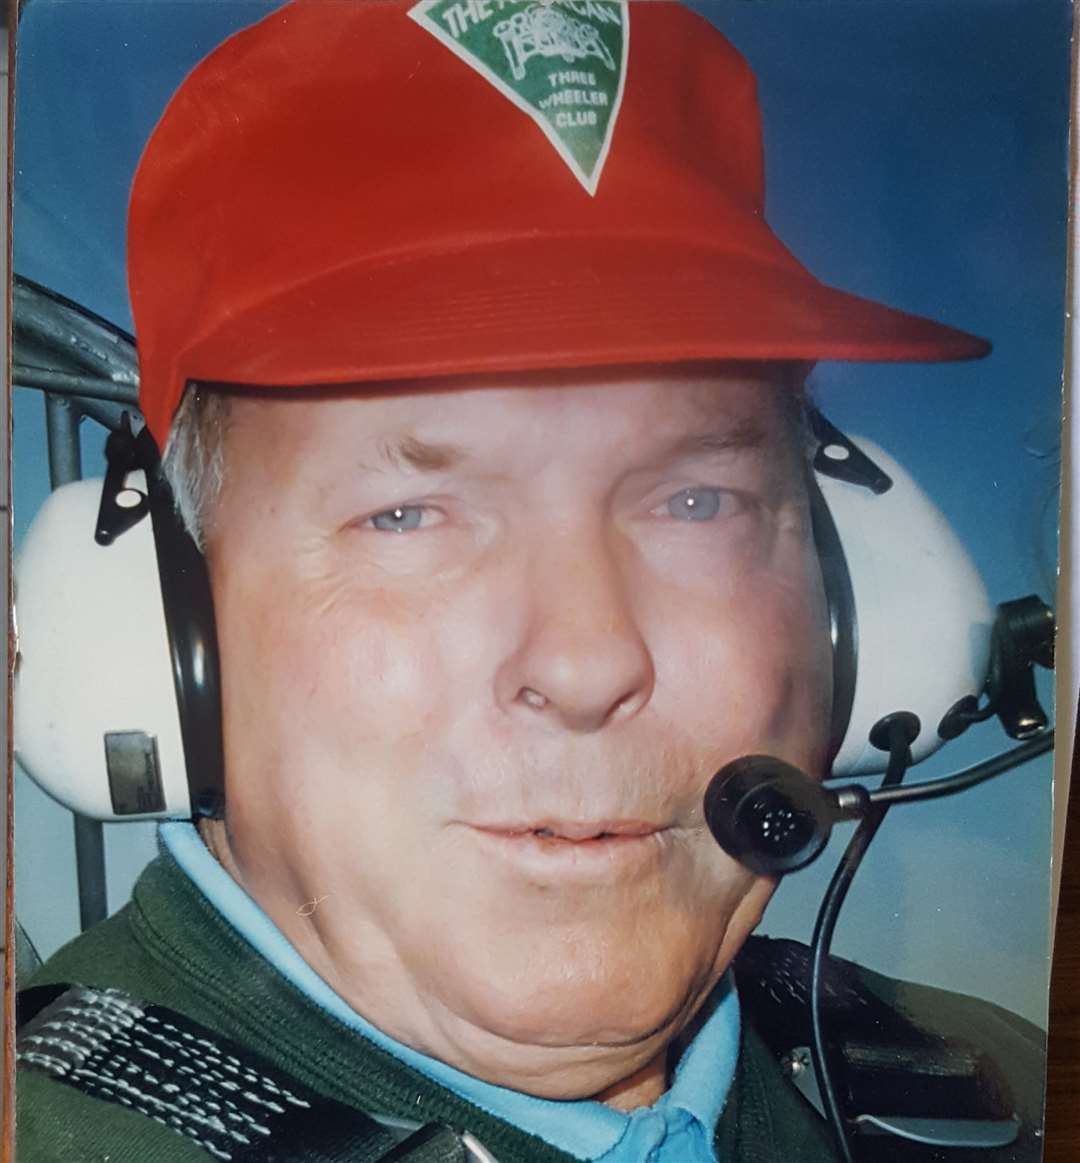 Dick Lukehurst was a keen pilot